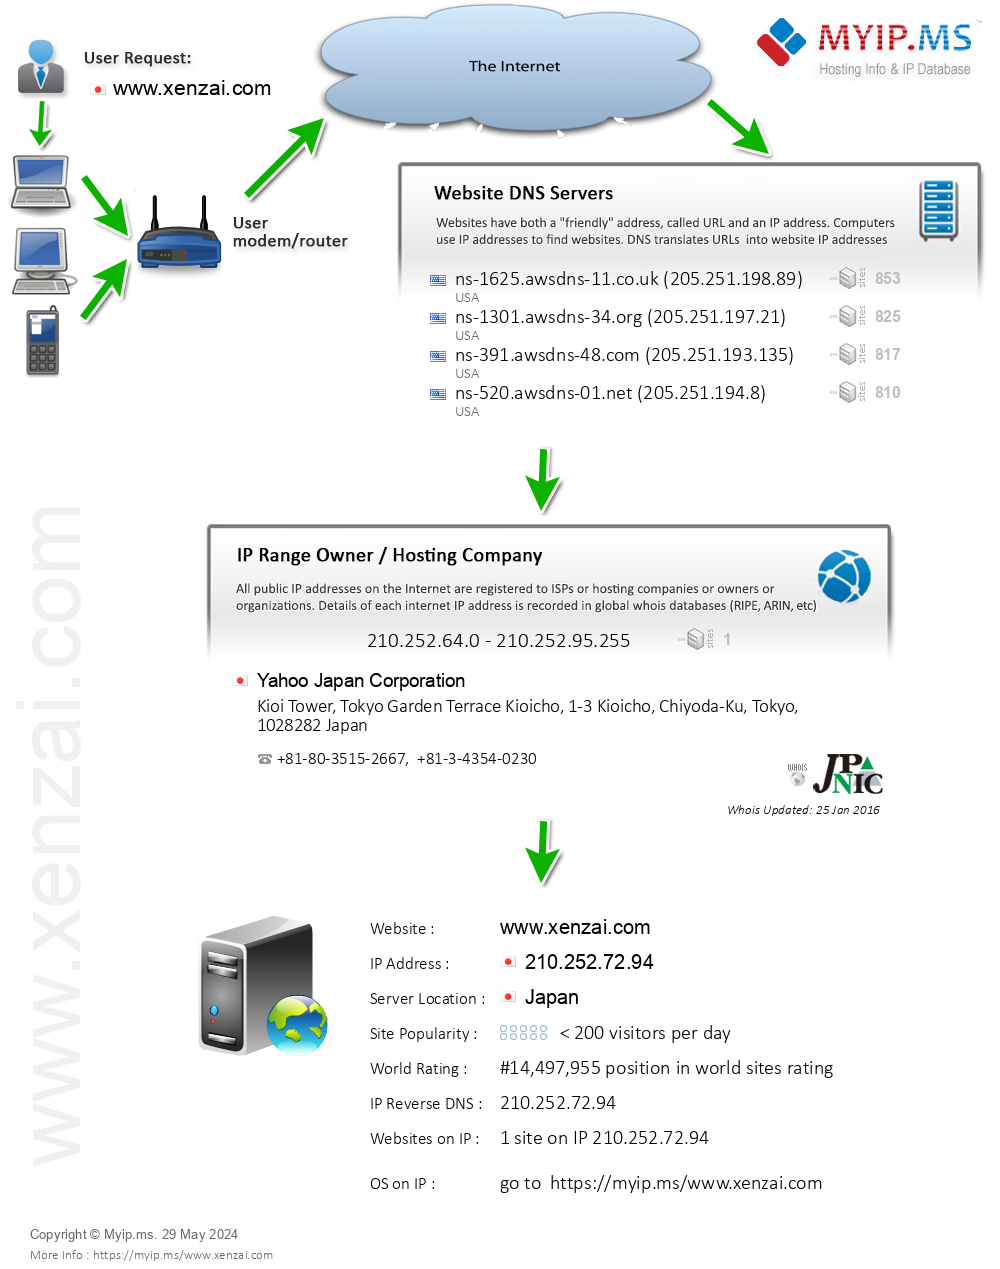 Xenzai.com - Website Hosting Visual IP Diagram